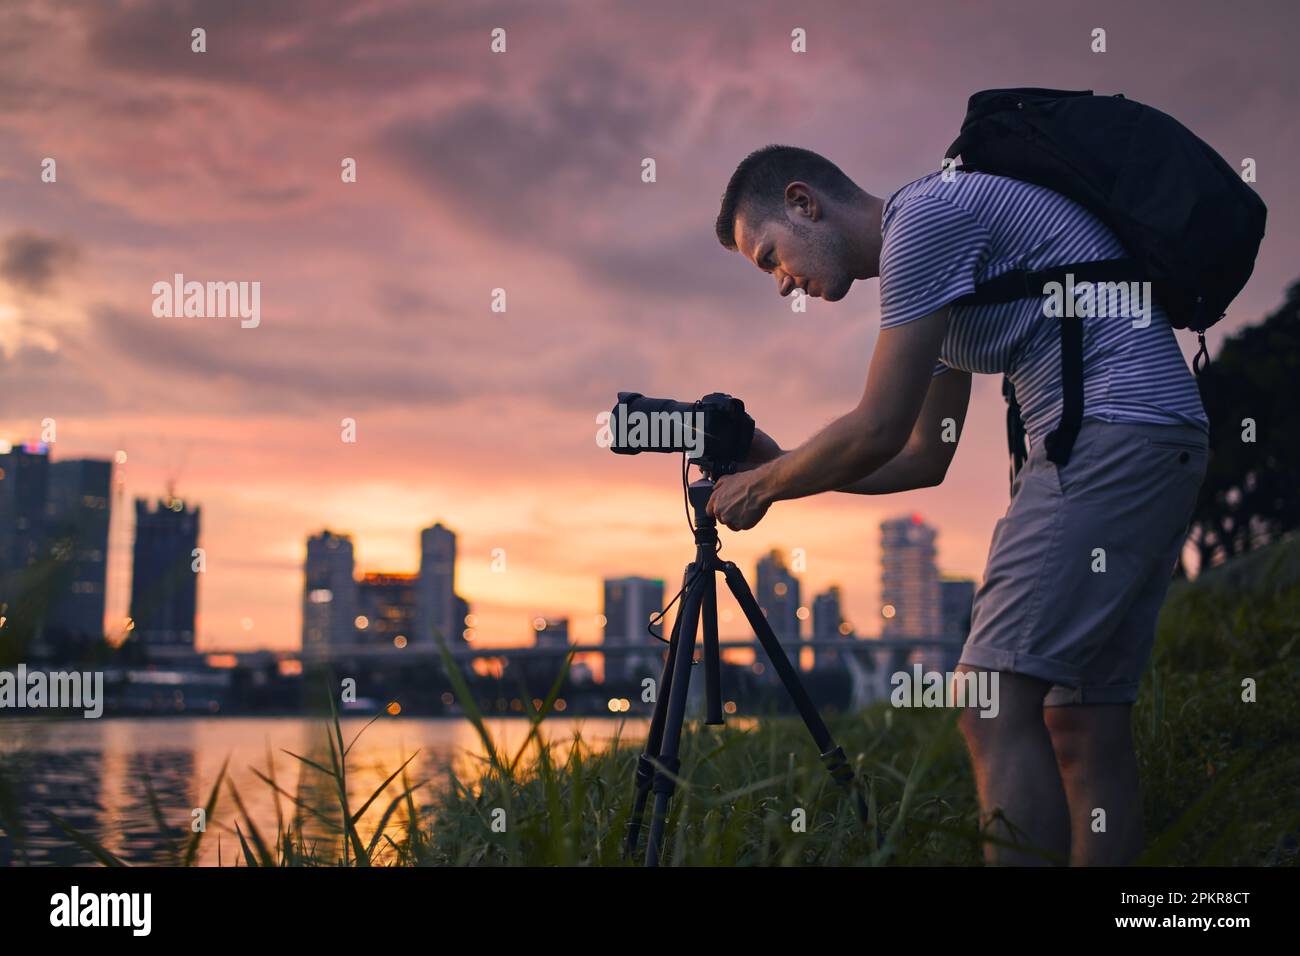 Konzentrierter Fotograf mit Kamera auf dem Stativ, während er Fotos von der Skyline der Stadt macht. Moderne Stadt bei schönem Sonnenuntergang, Singapur. Stockfoto